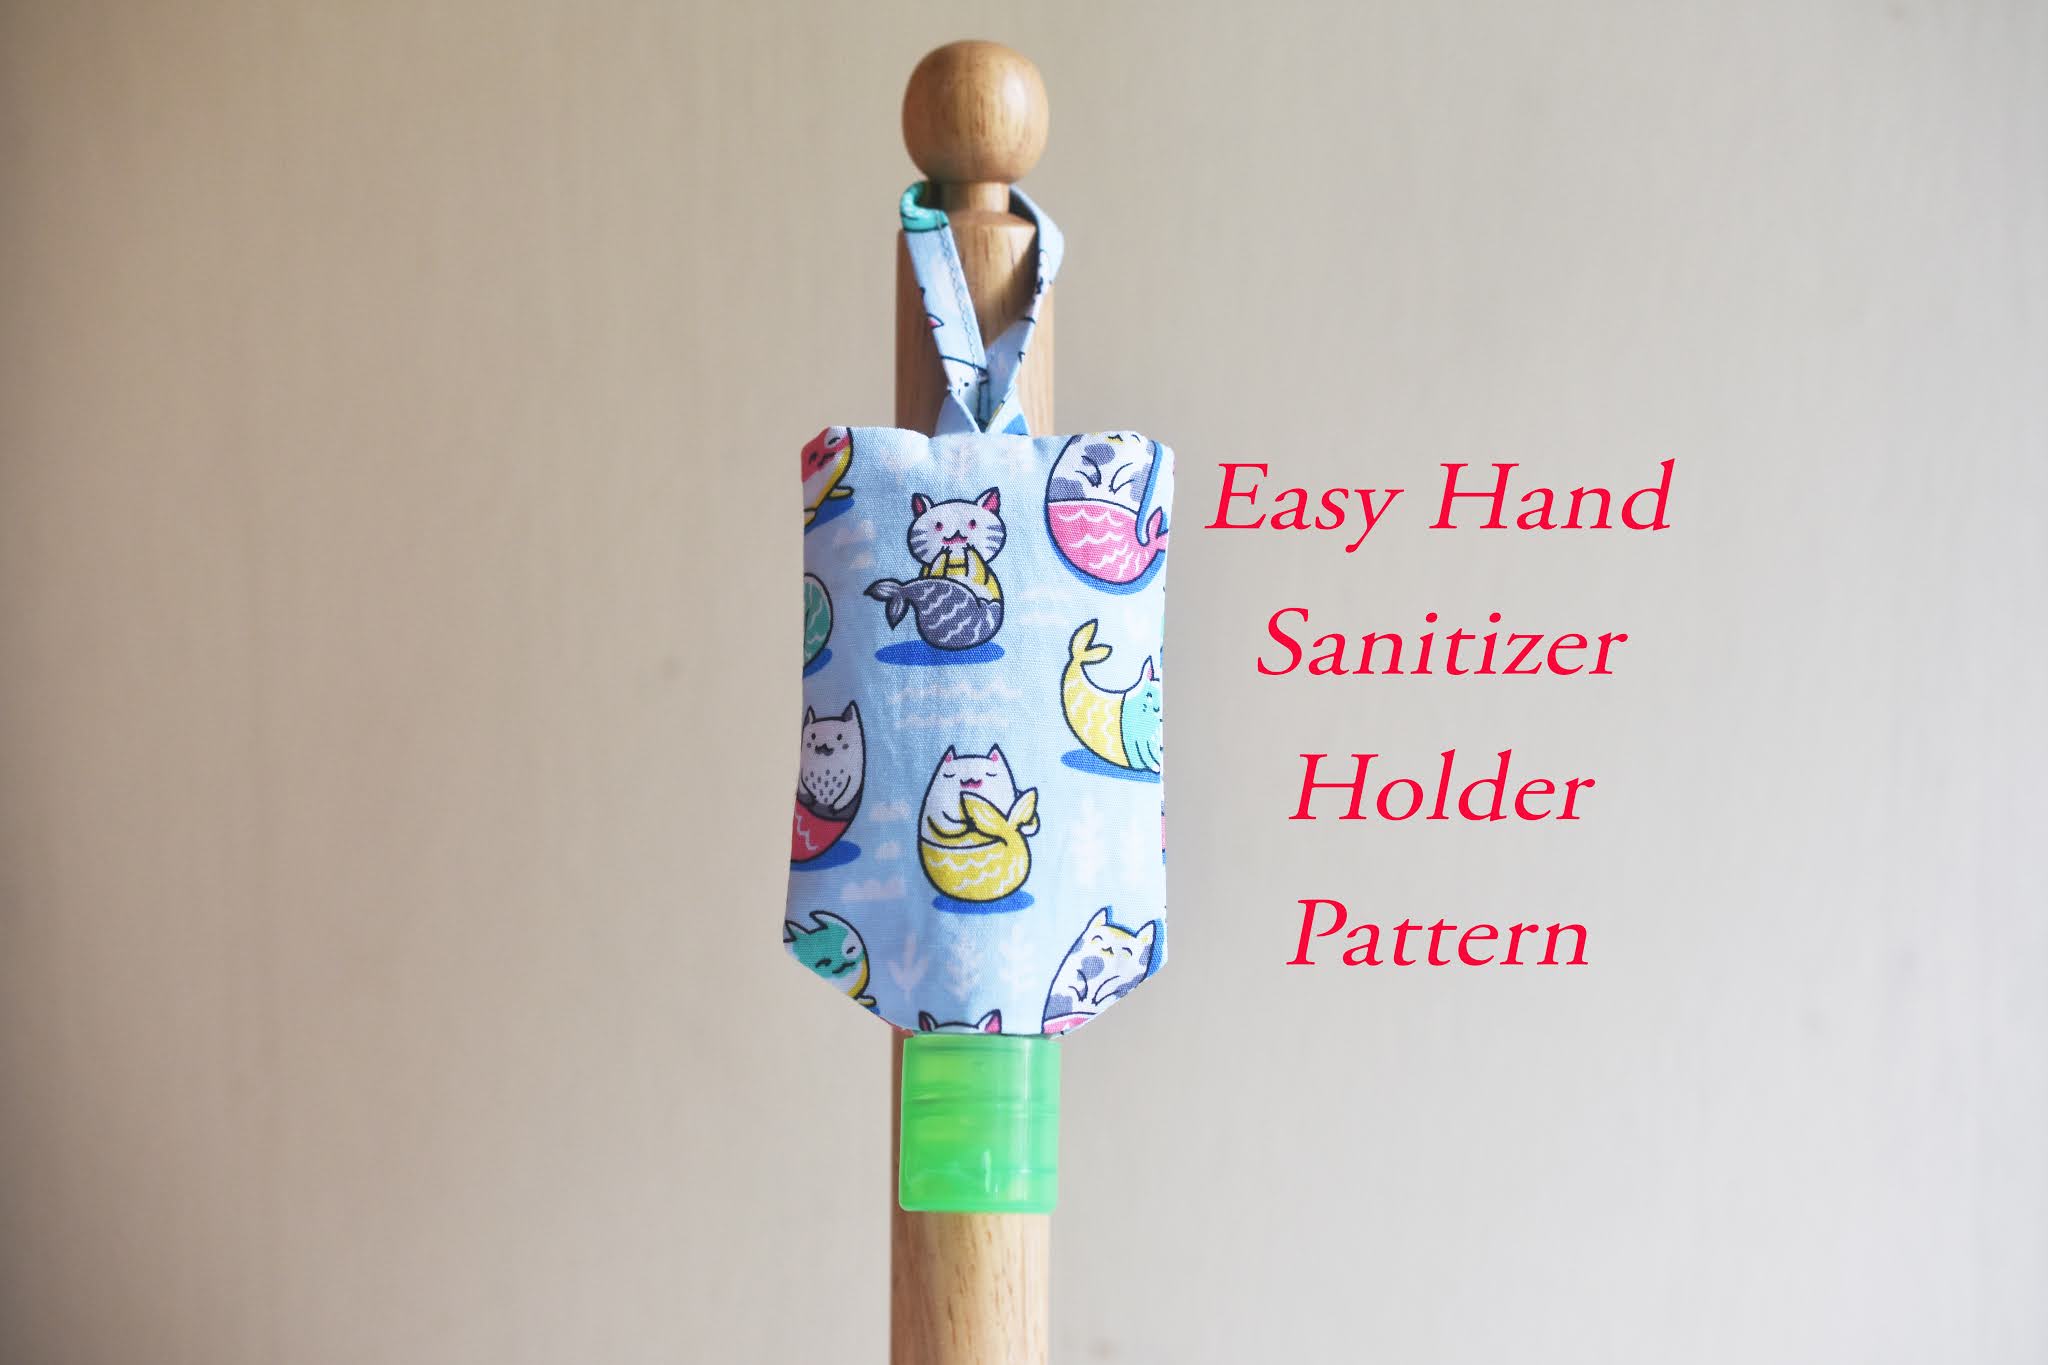 Easy Hand Sanitizer Holder